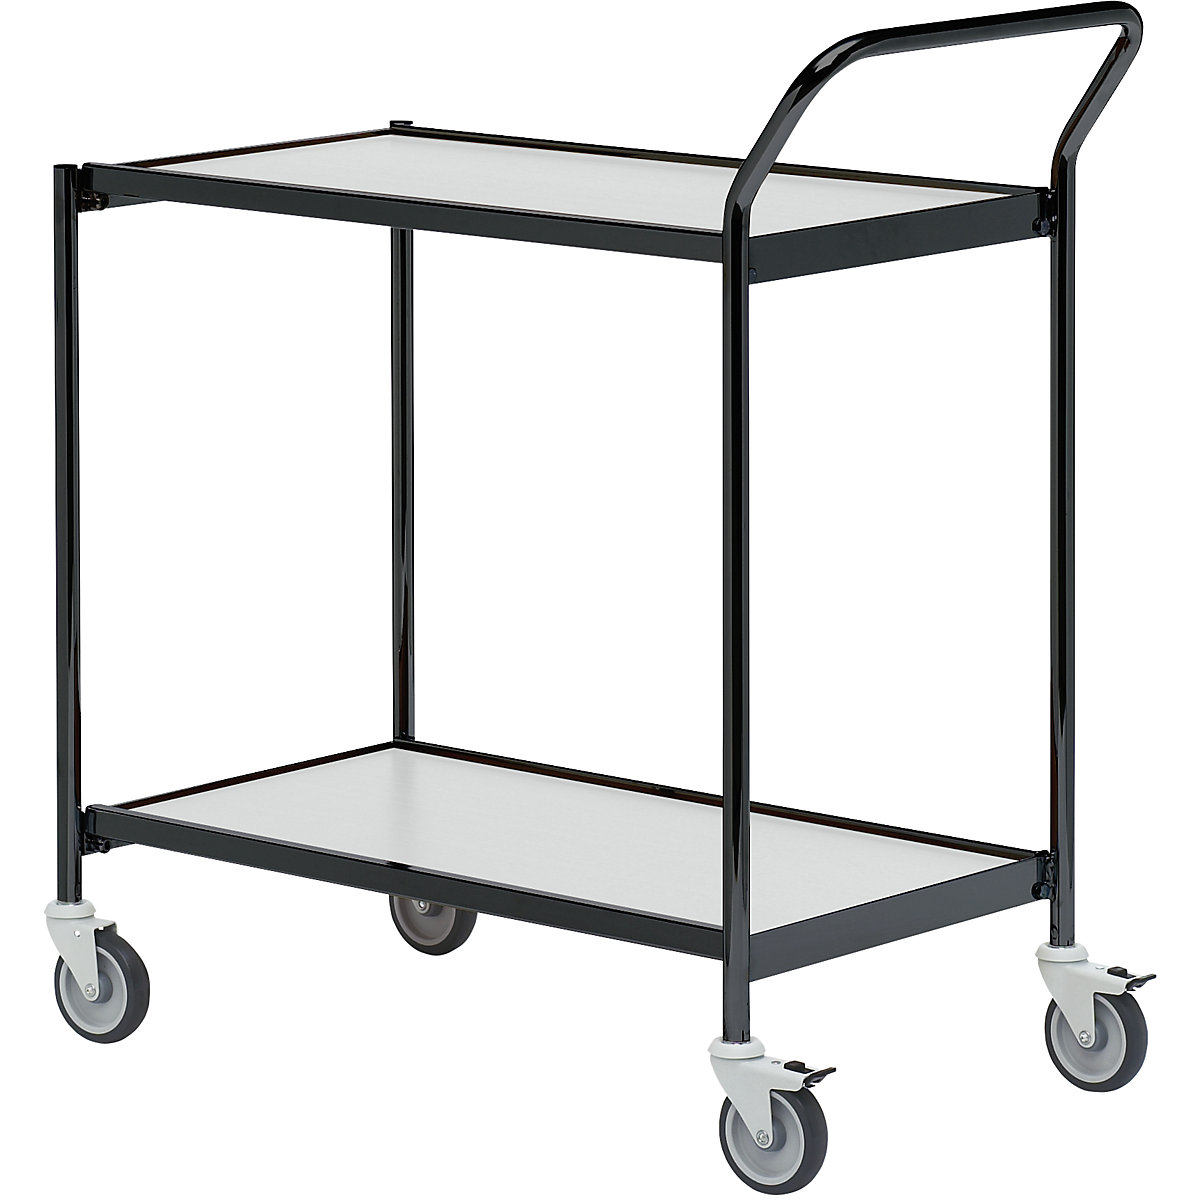 Stolový vozík – HelgeNyberg, 2 poschodia, d x š 1000 x 420 mm, čierna/šedá, od 5 ks-27